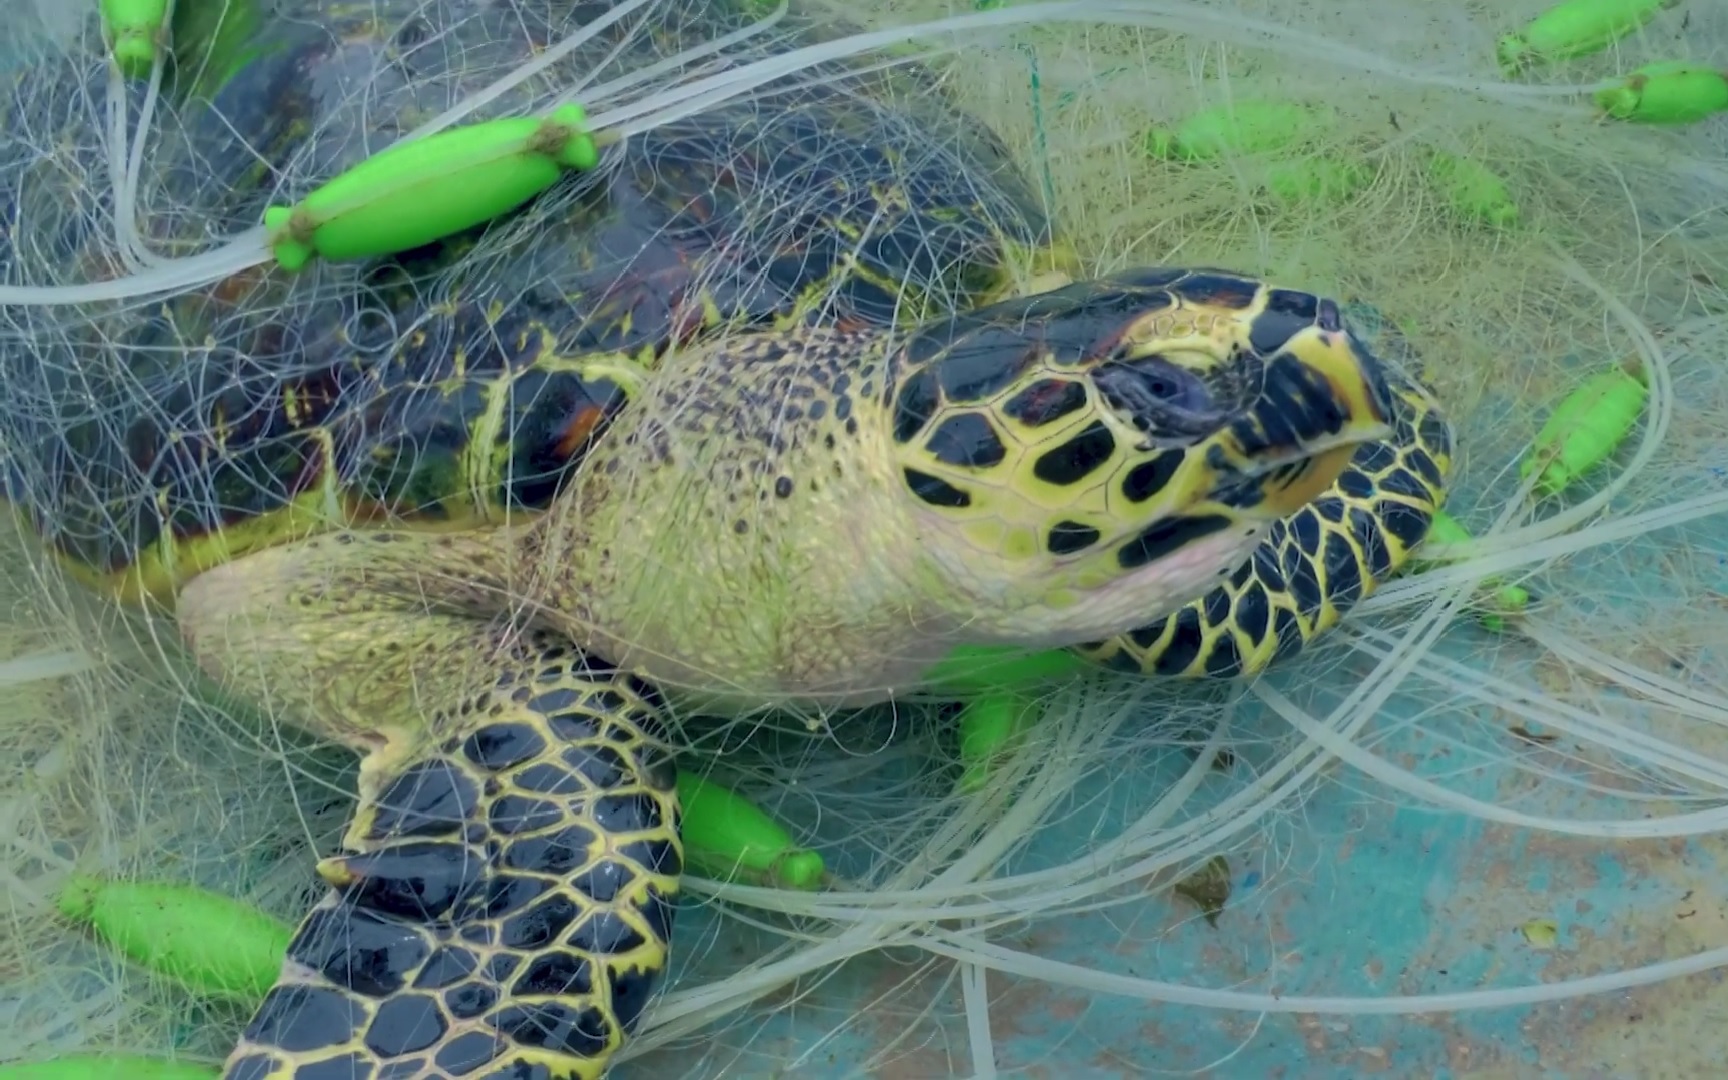 Kêu gọi không mua các sản phẩm từ rùa biển và động vật hoang dã